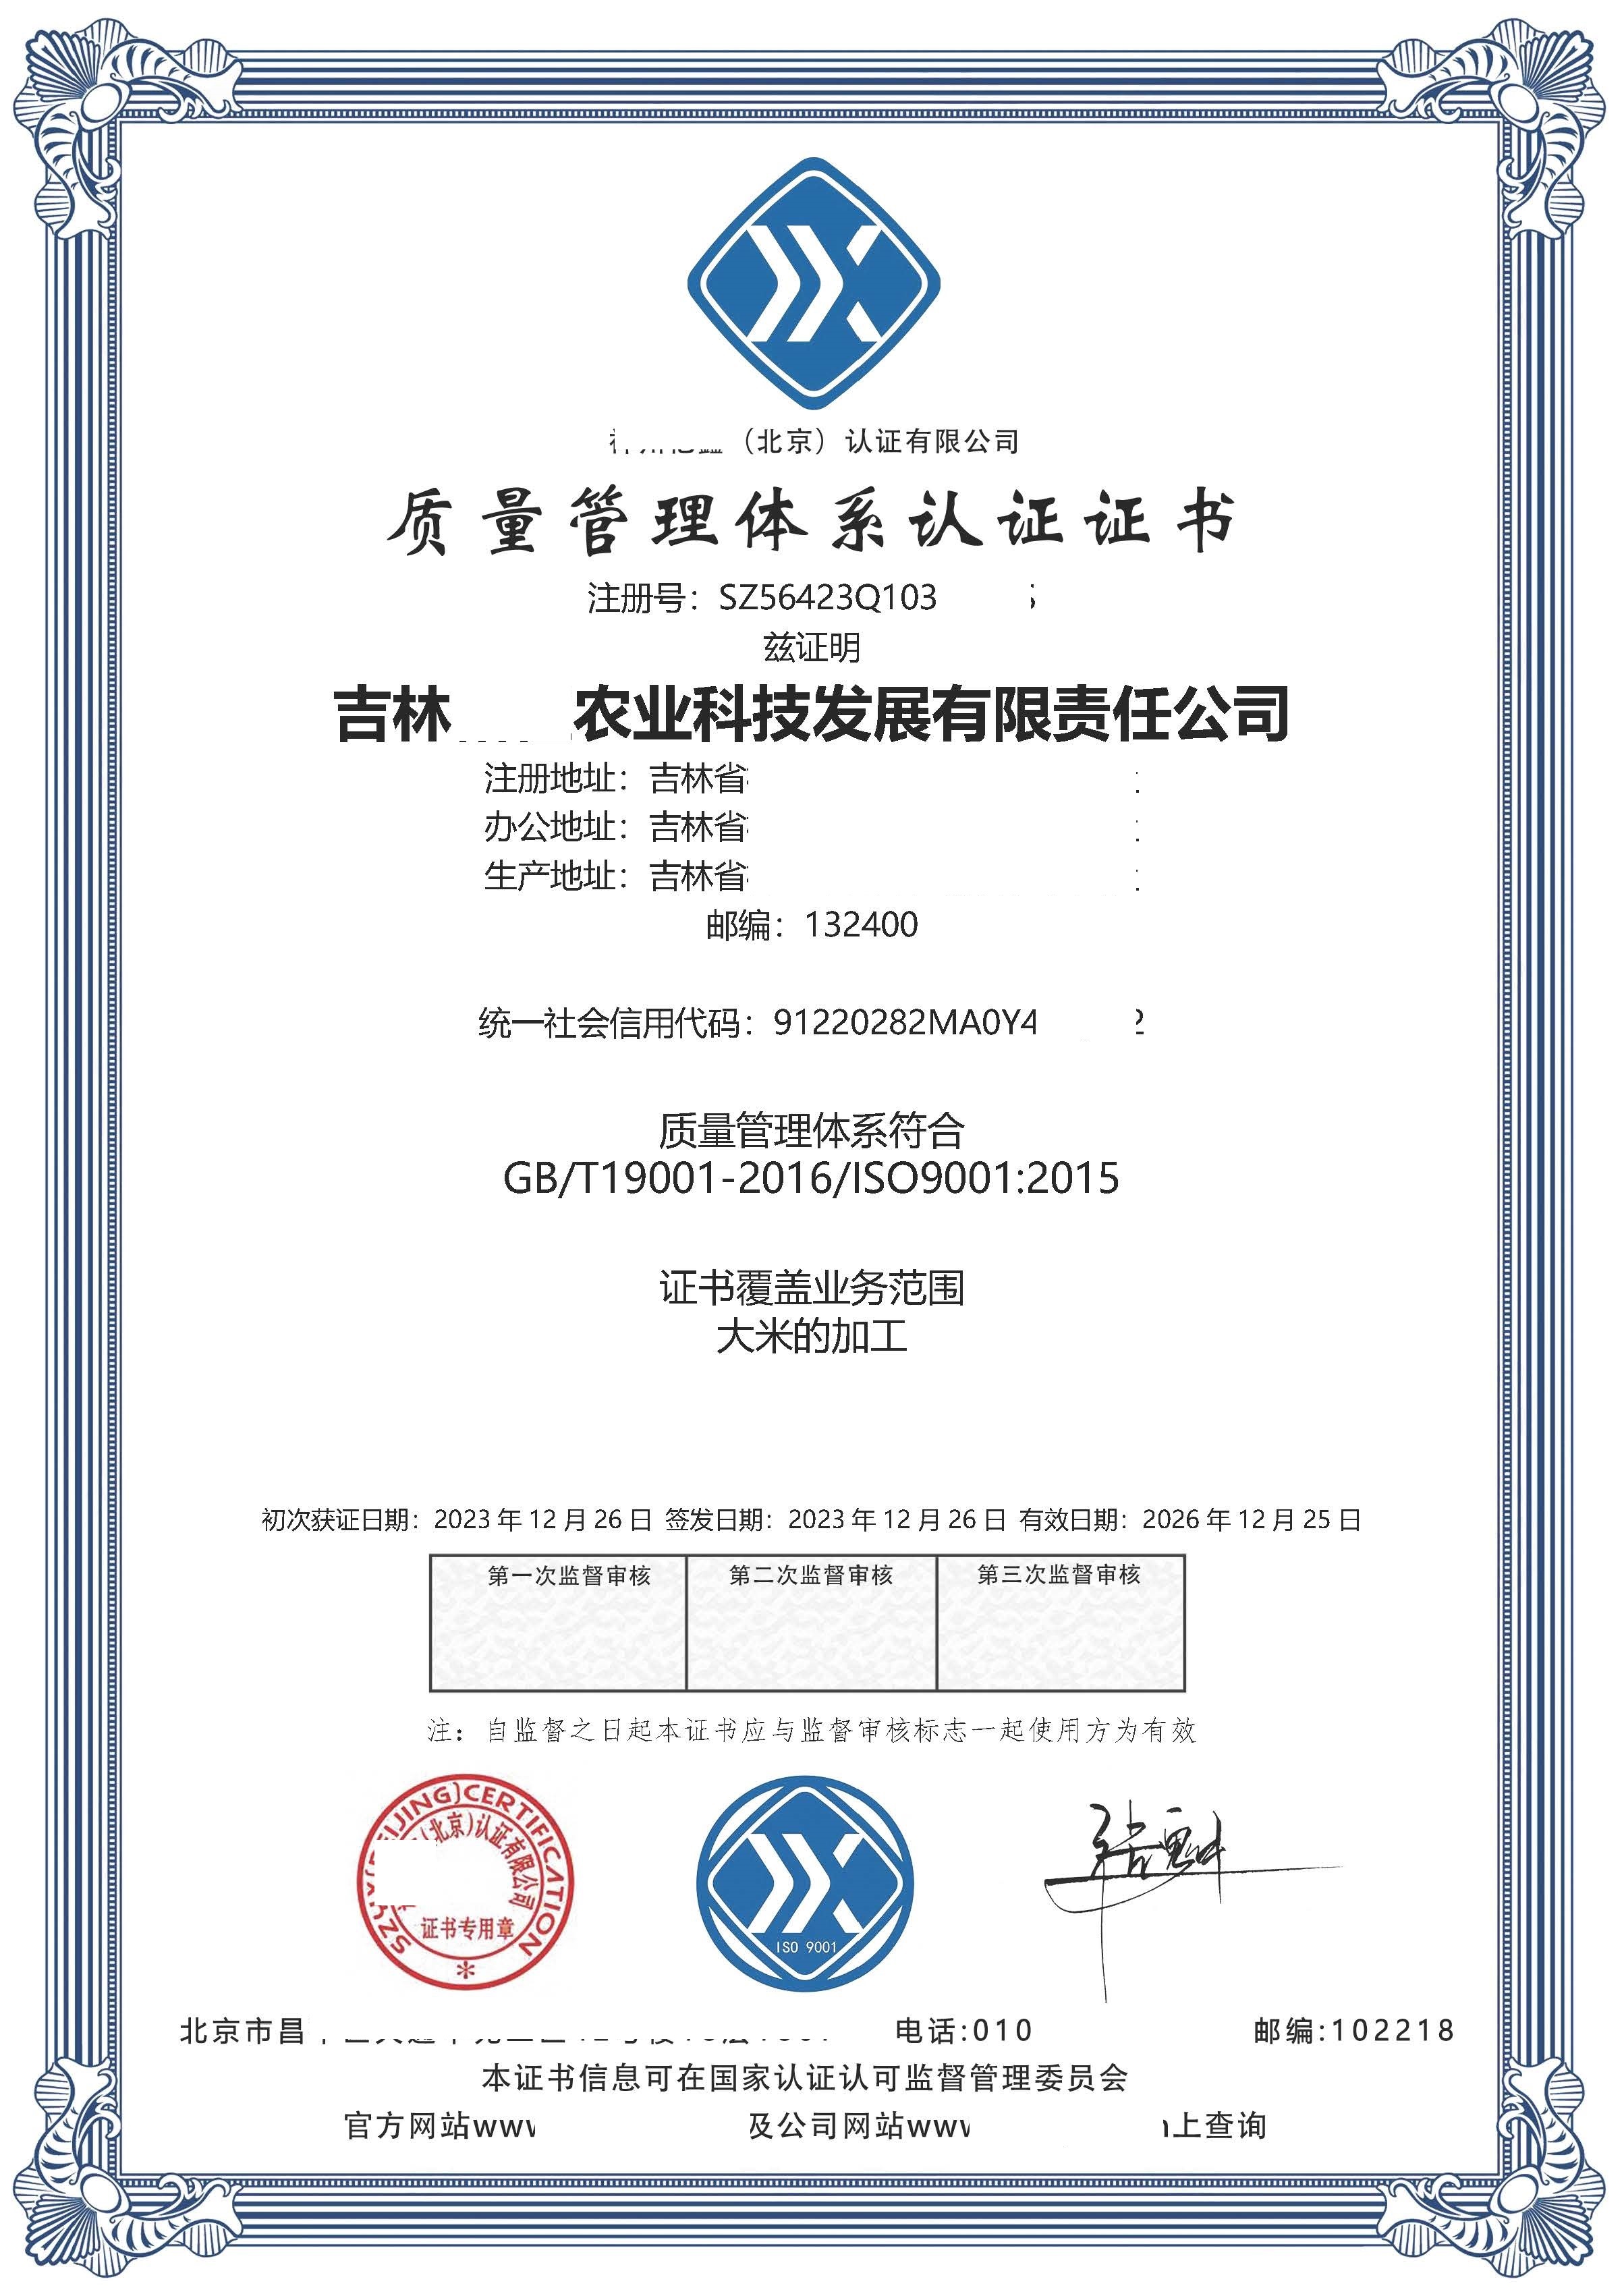 恭喜  吉林**农业科技发展有限责任公司  获得ISO9001质量管理体系认证证书